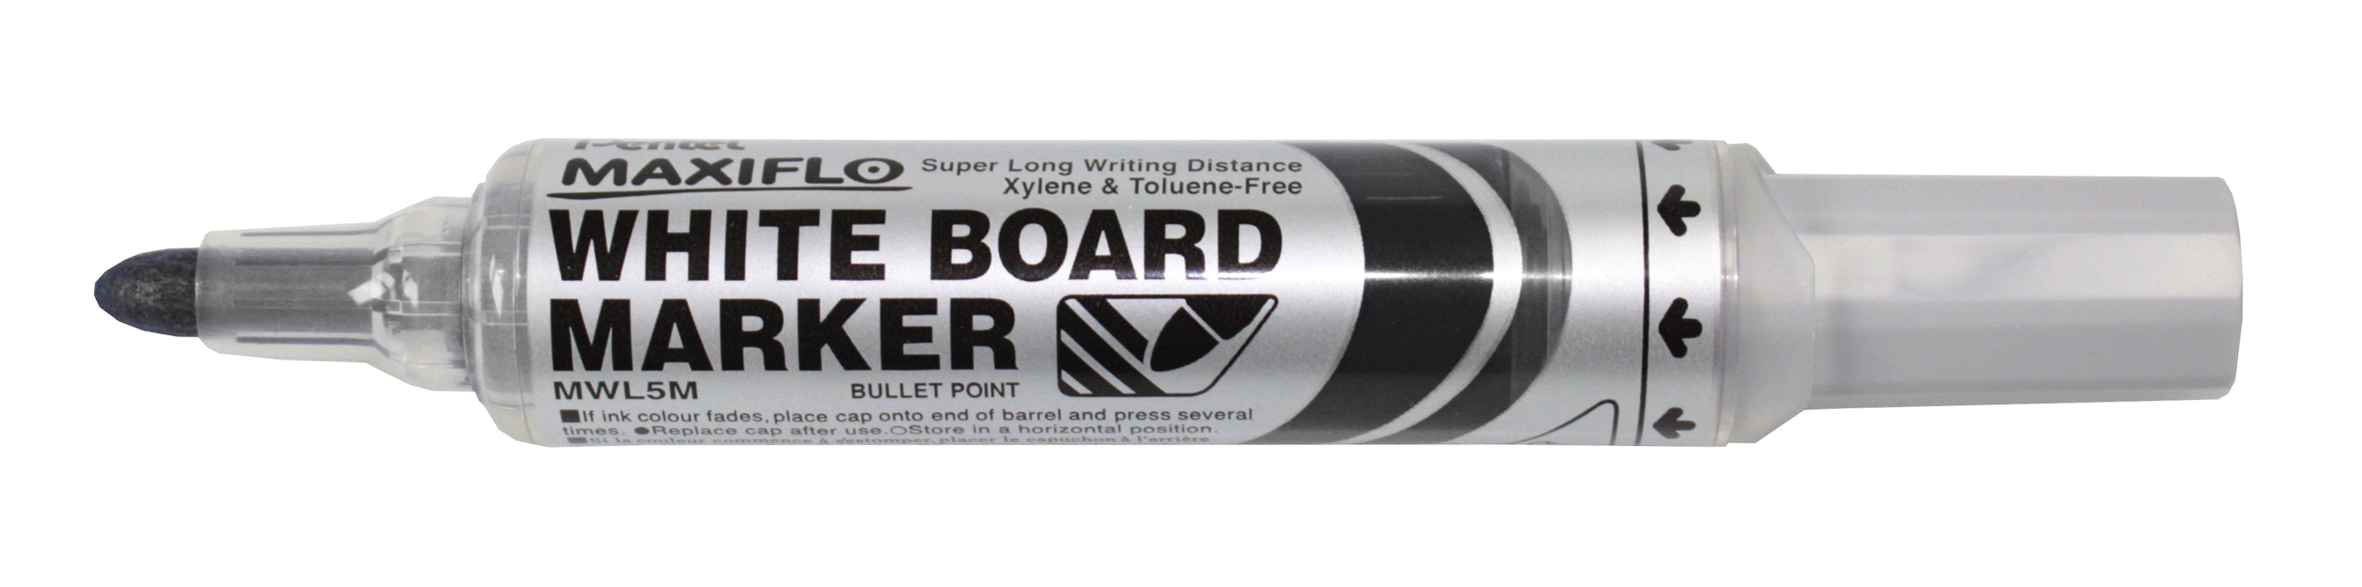 PENTEL Whiteboard Marker 6mm MWL5M-AO noir